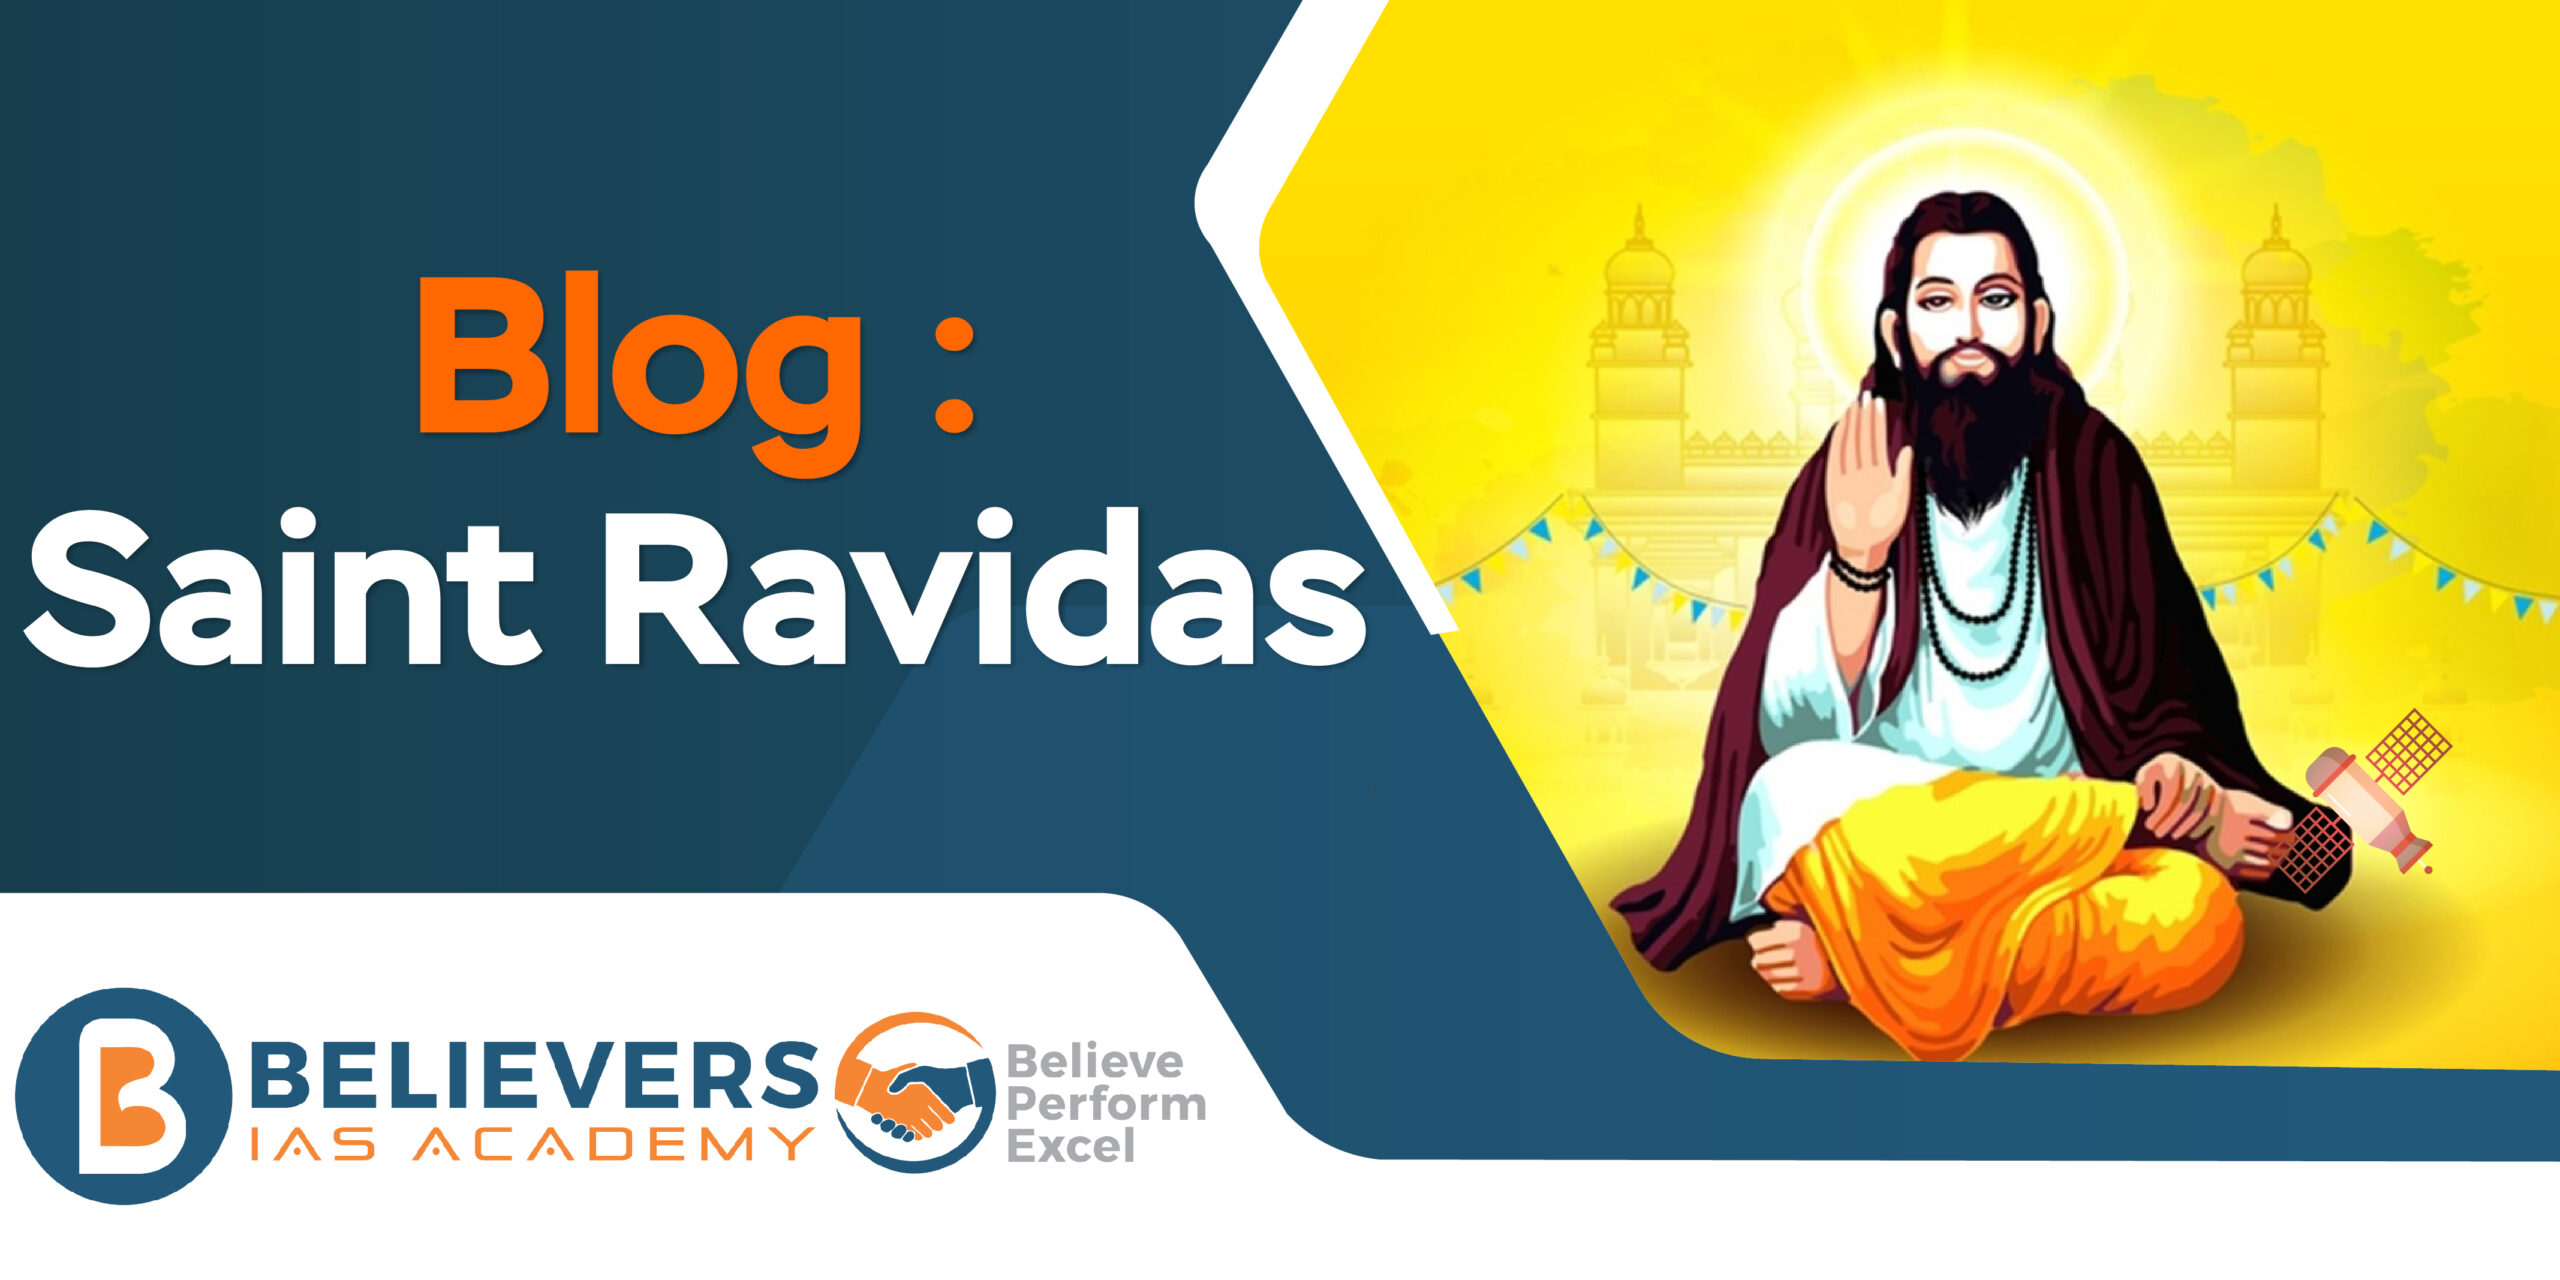 Saint Ravidas: Detailed Biography